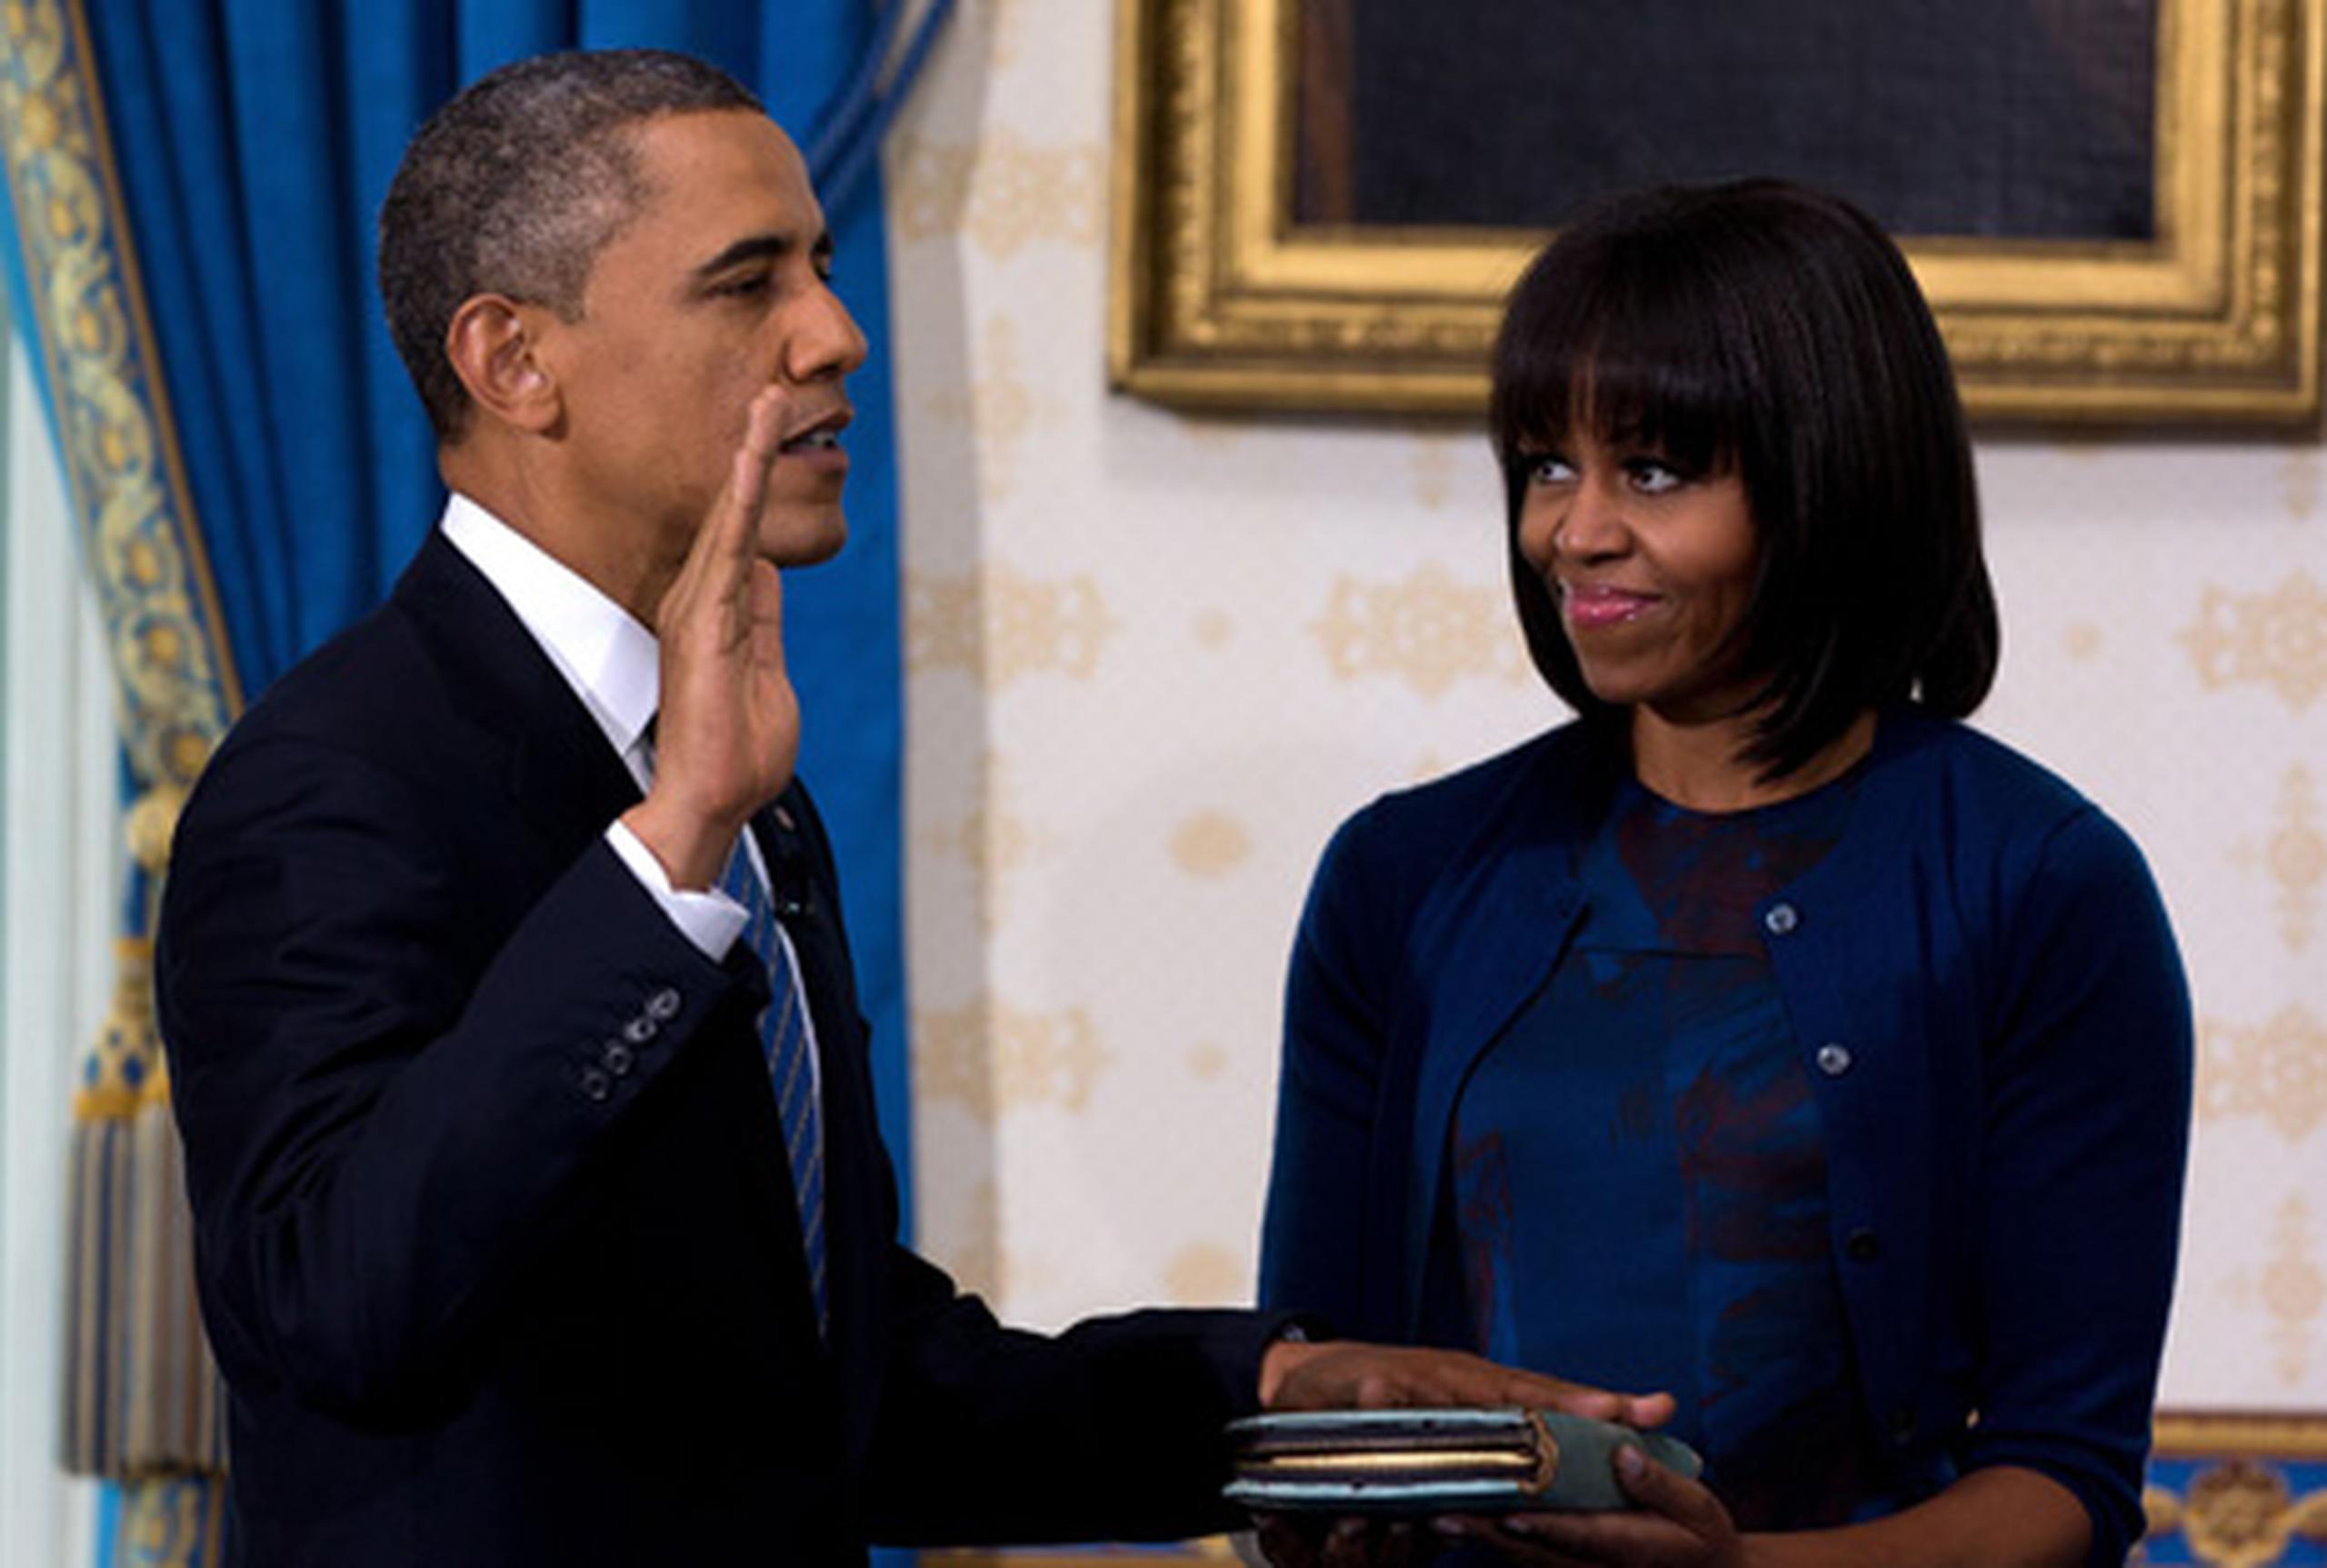 El presidente Barack Obama prestará juramento el domingo rodeado de su familia en una ceremonia privada de investidura en la Casa Blanca. (AFP / Doug Mills)